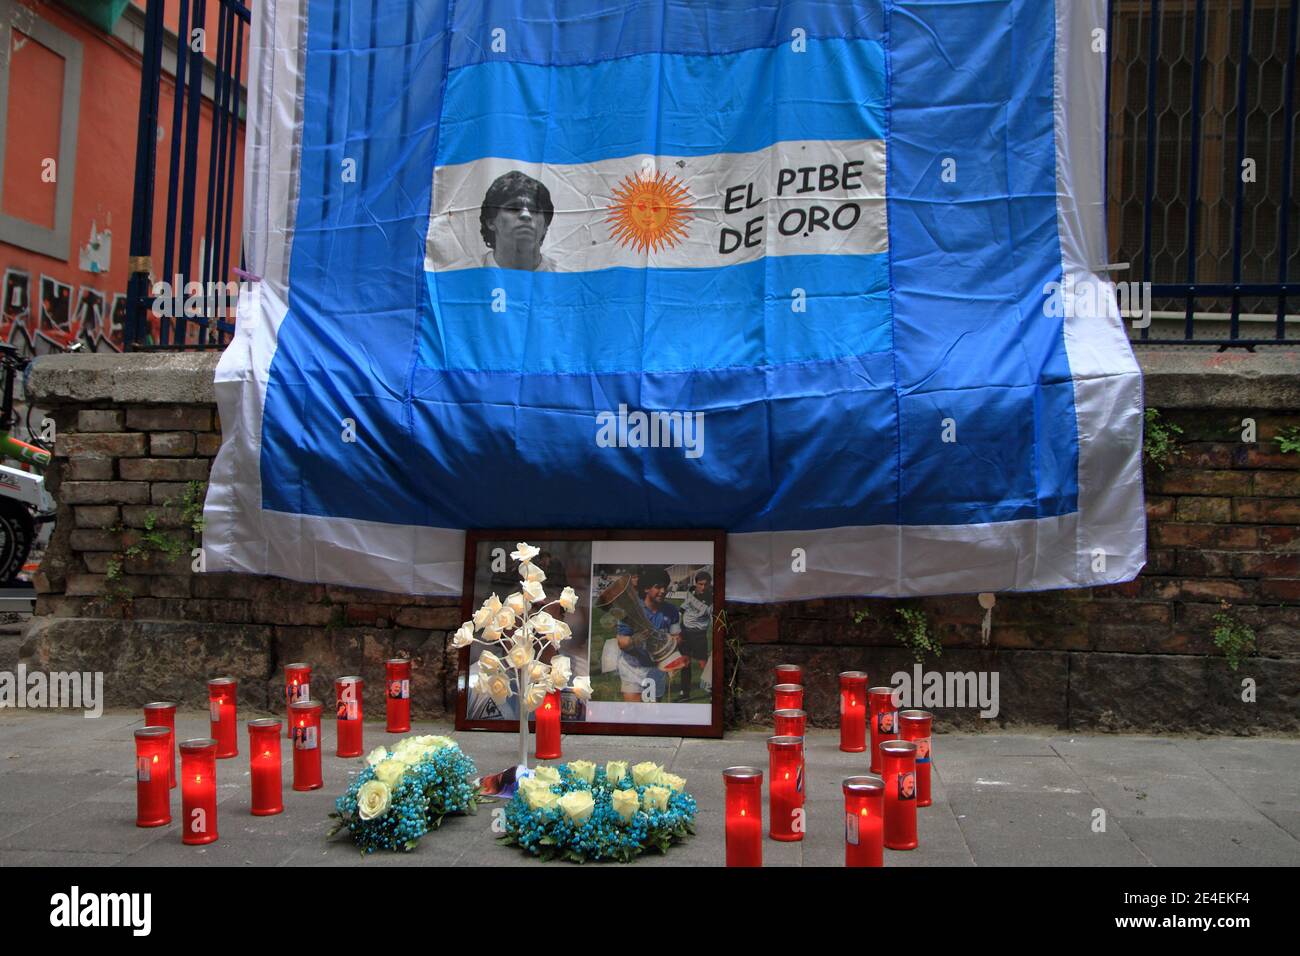 Tre giorni dopo la morte di Maradona , avvenuta il 25 novembre in Argentina. Manifesto funebre per le strade del centro storico. Foto Stock